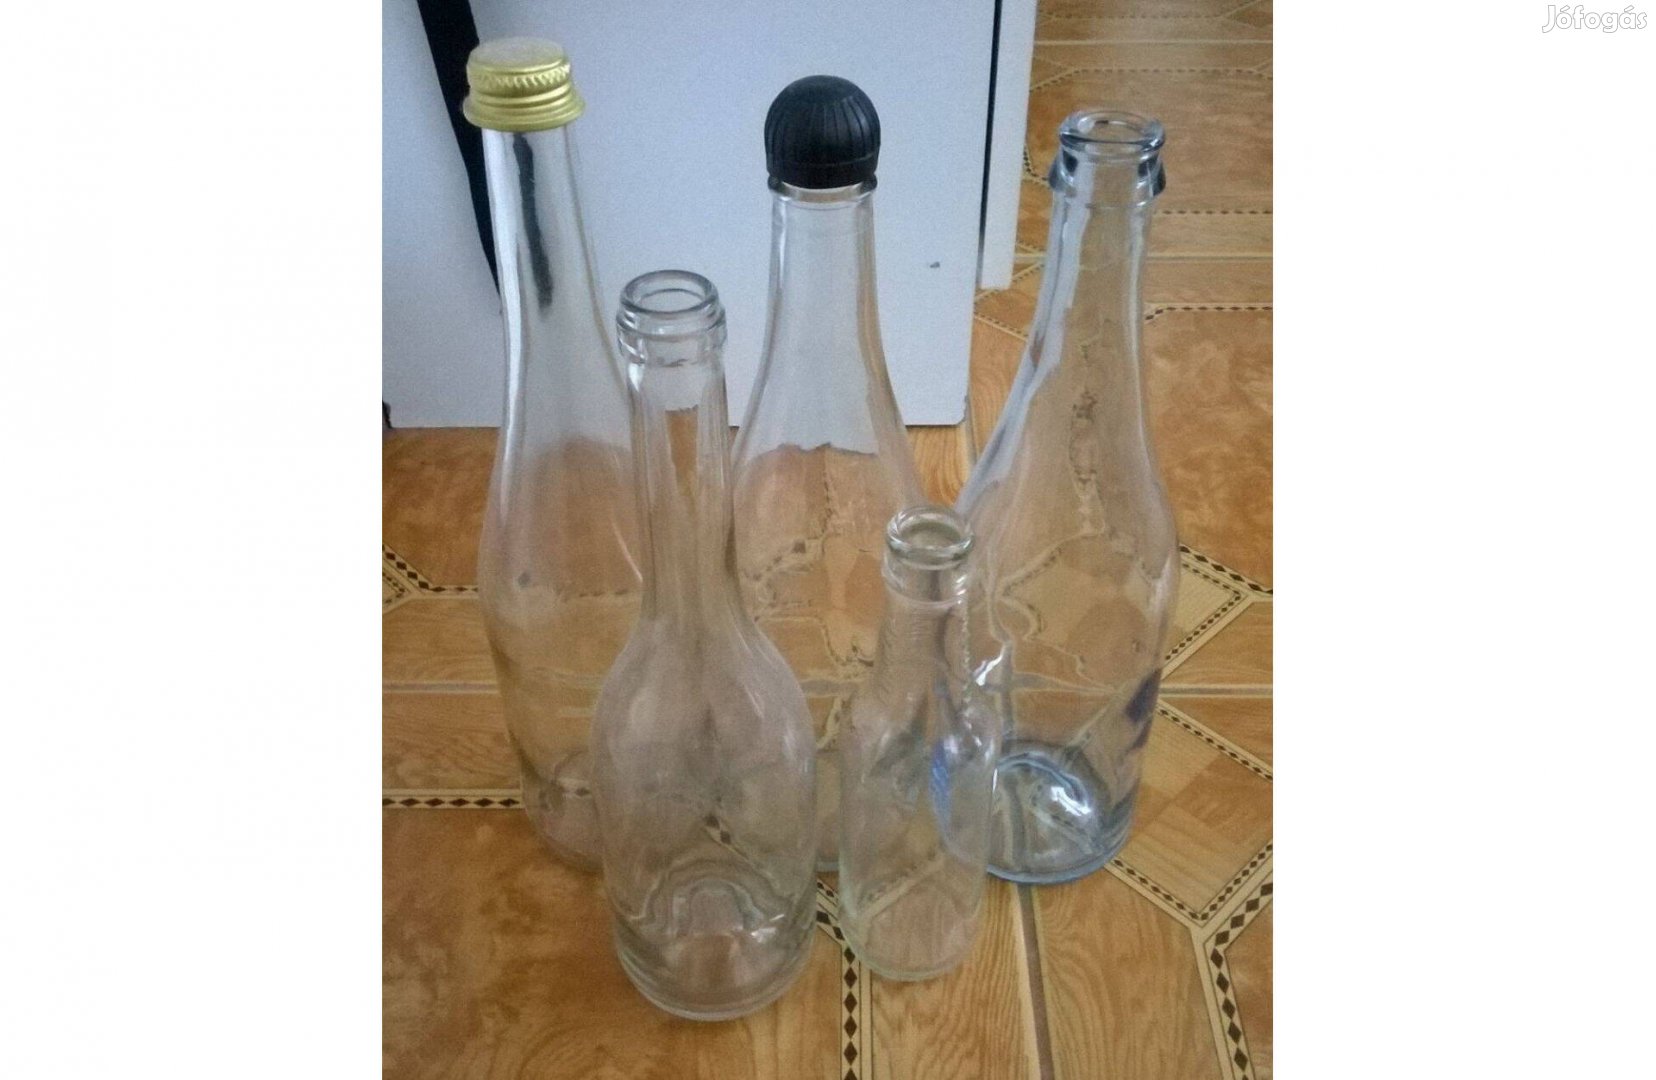 Ingyen elvihető üvegek, befőző üveg